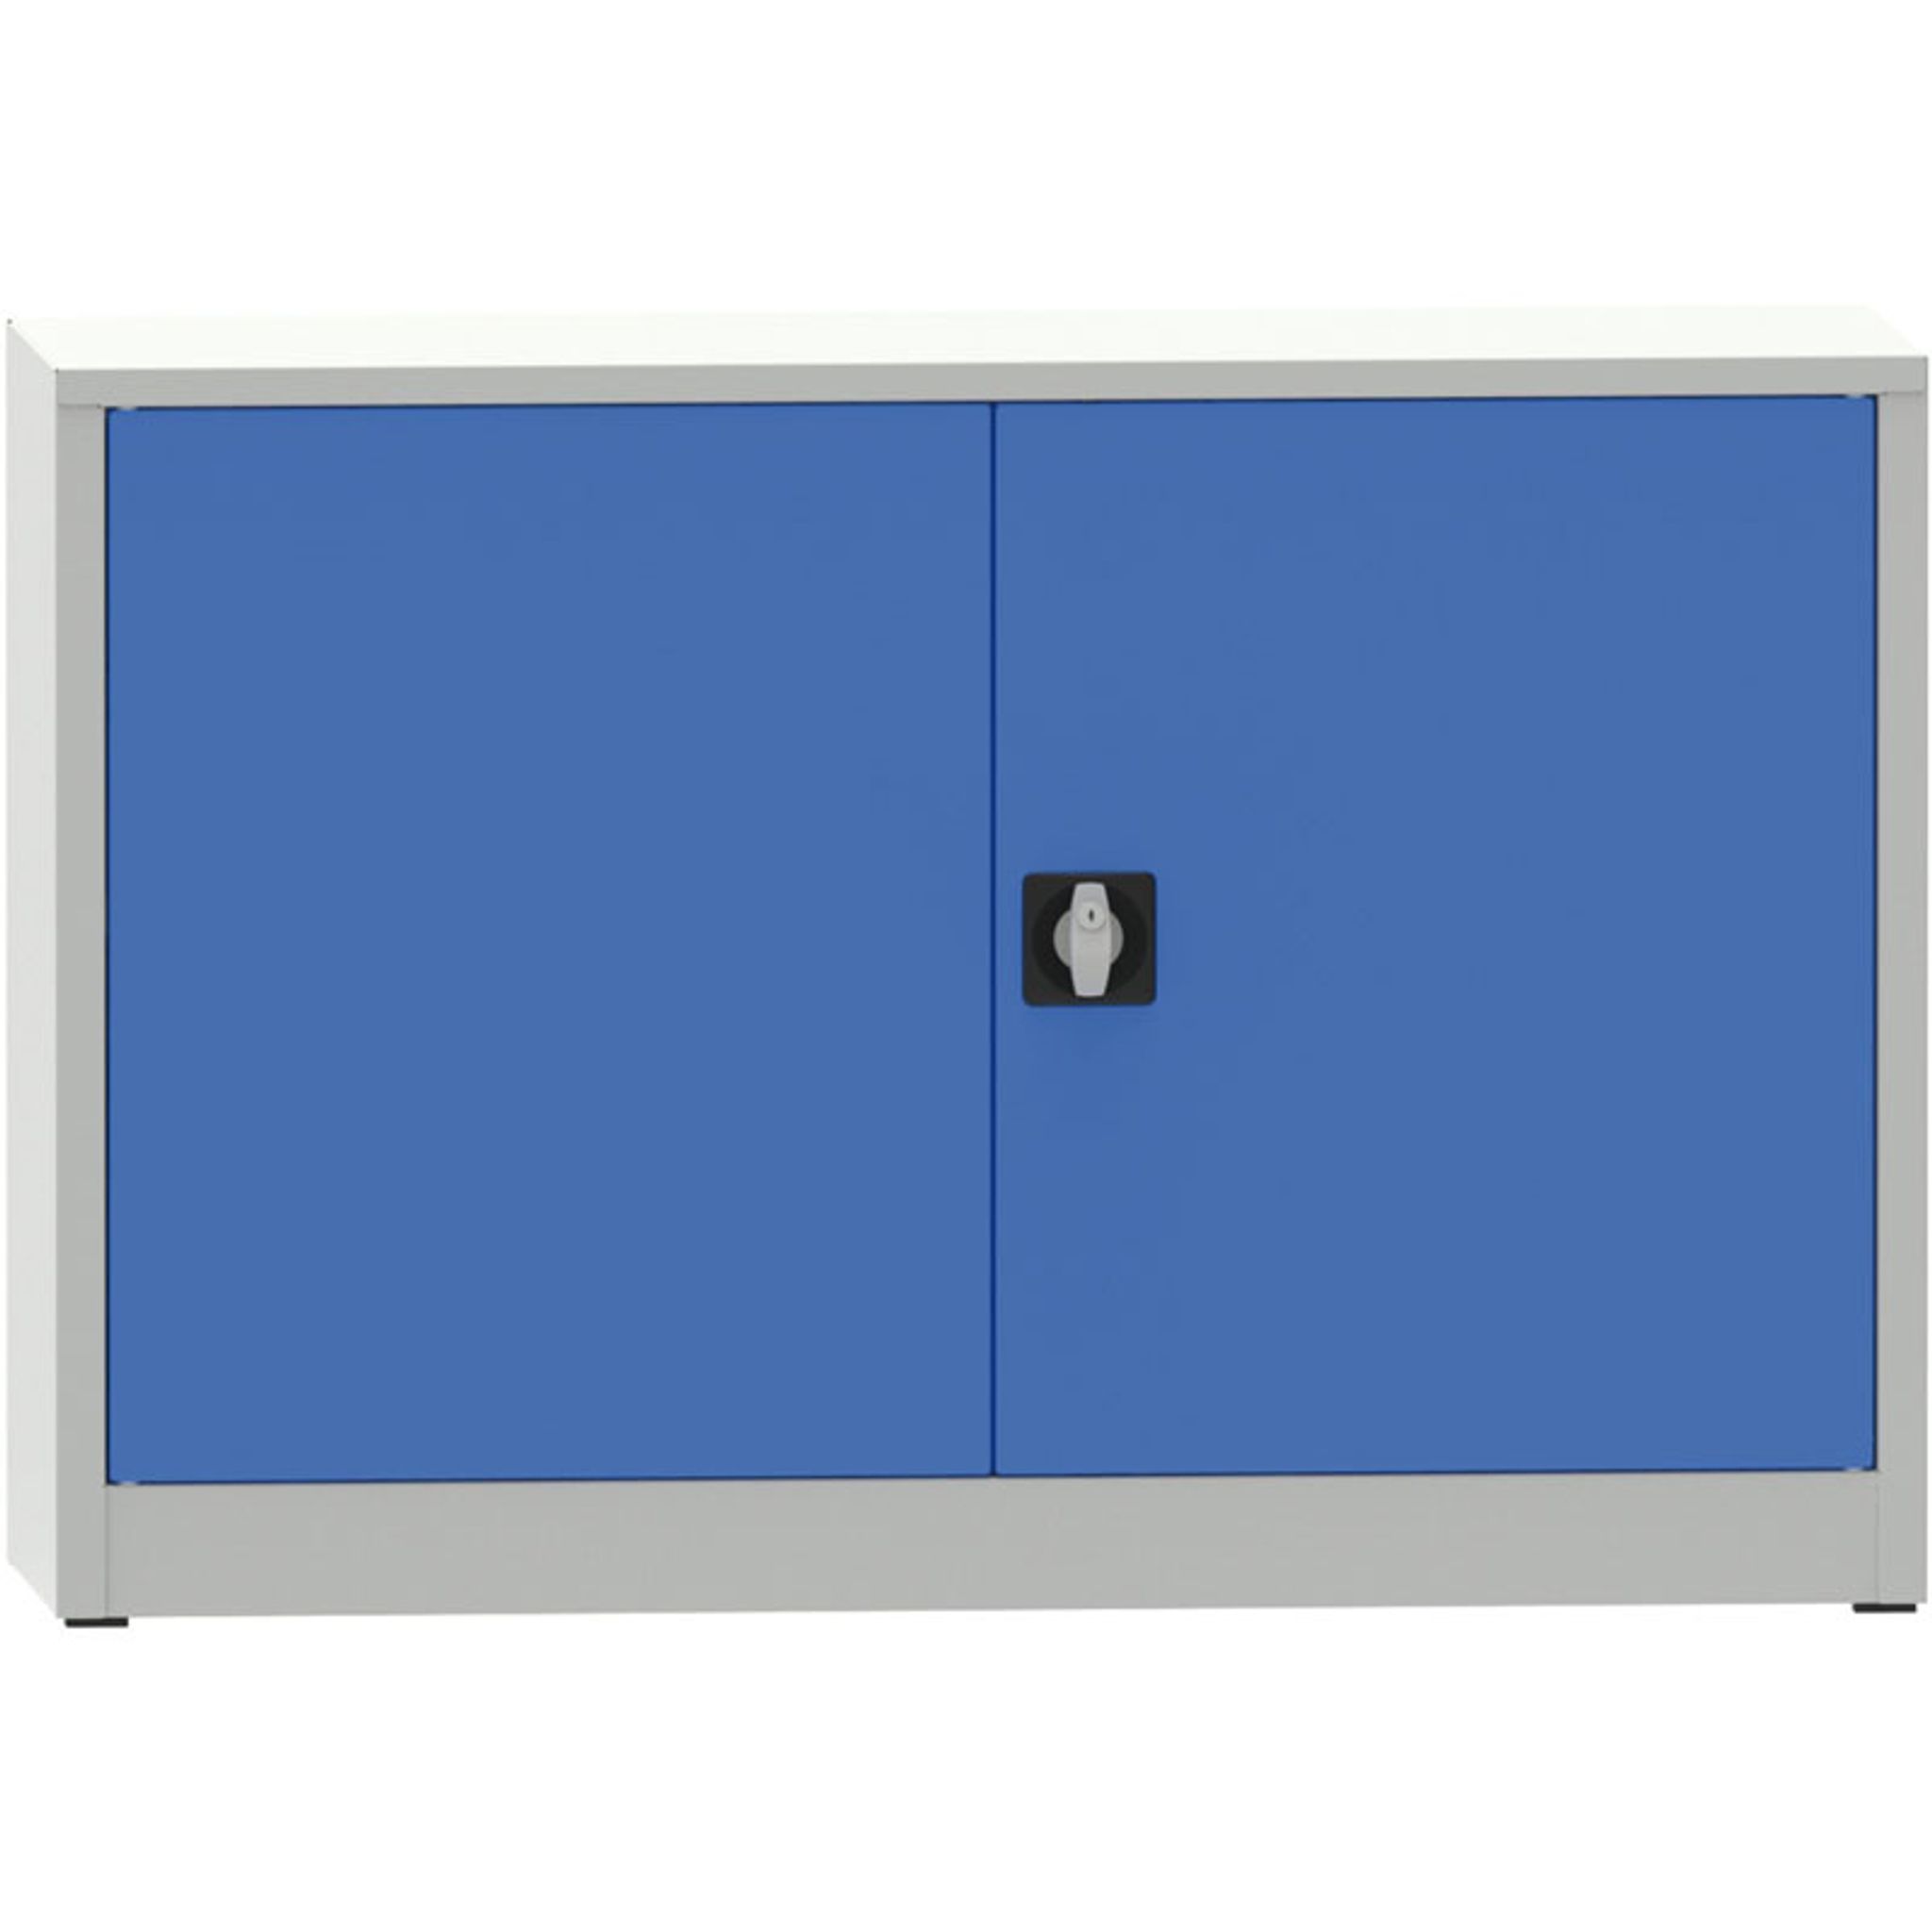 Dílenská policová skříň na nářadí KOVONA JUMBO, 1 police, svařovaná, 800 x 1200 x 600 mm, šedá / modrá